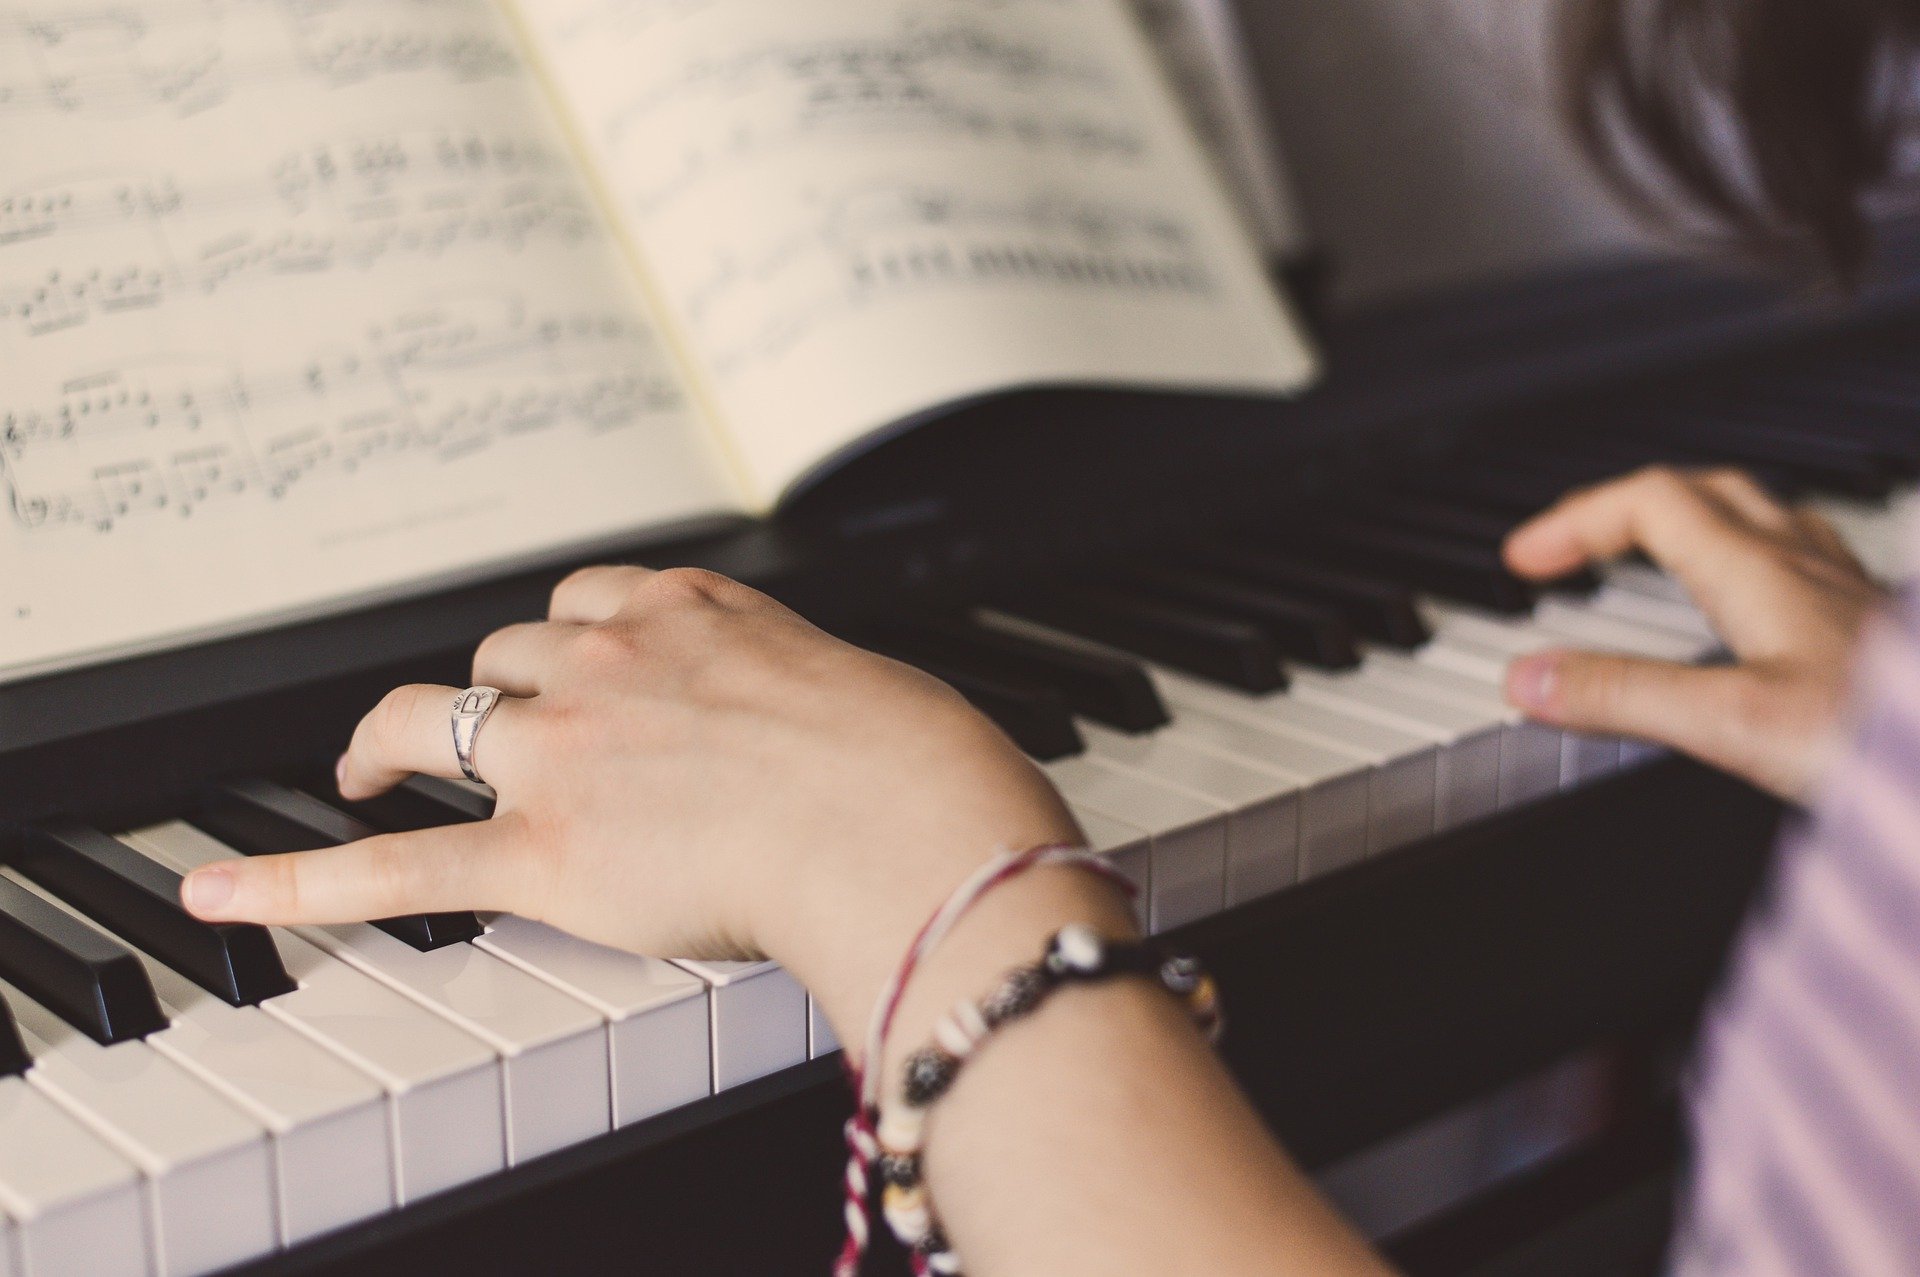 Klavier spielen lernen - Jugendliche bekommt Klavierunterricht bei einem Klavierlehrer